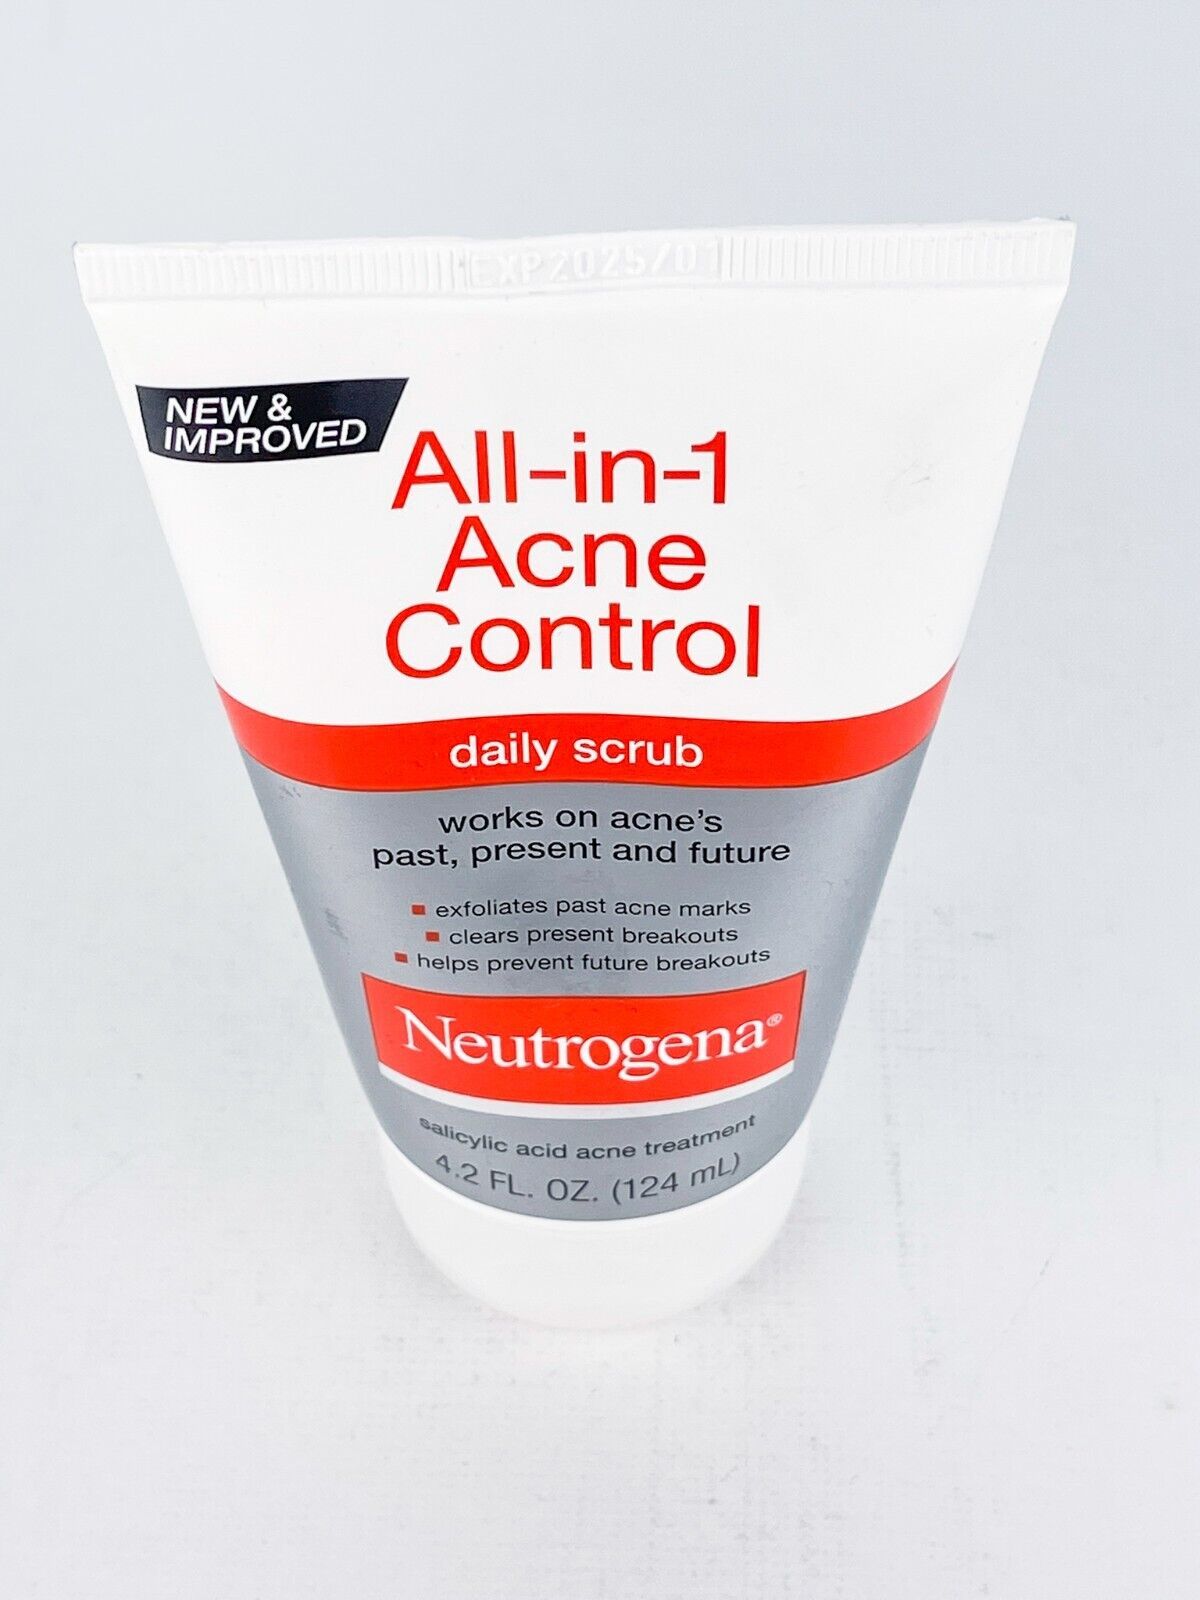 Neutrogena All in One Acne Control Daily Scrub 4.2 Fluid Ounces bb1/25 - $12.55